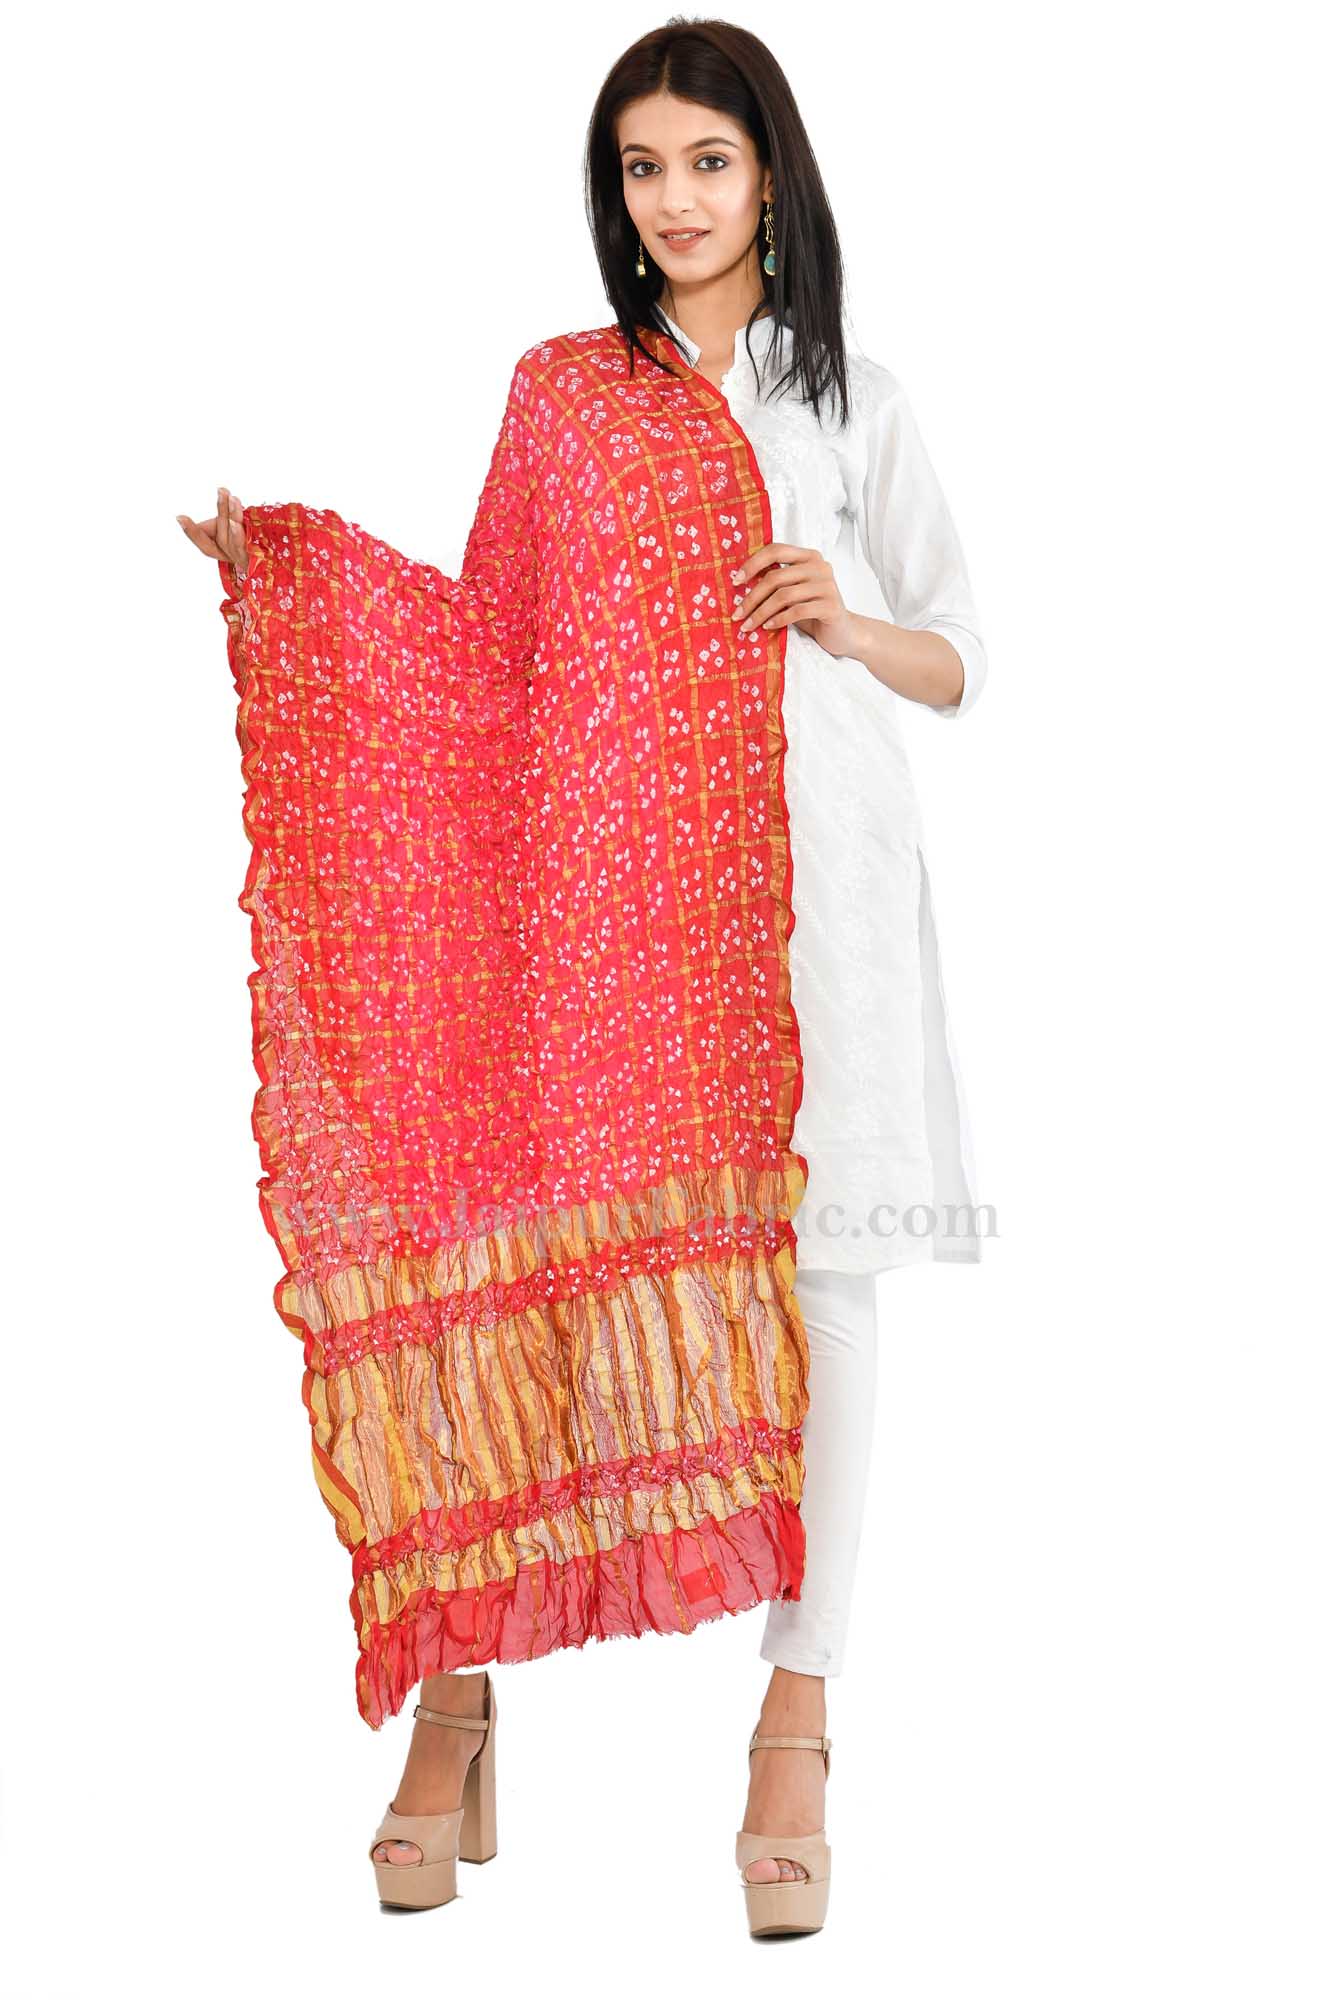 Gharchola Art Silk Red Jaipuri Rajasthani Bandhni Bandhej Multi-Colored Heavy Dupatta Chunni